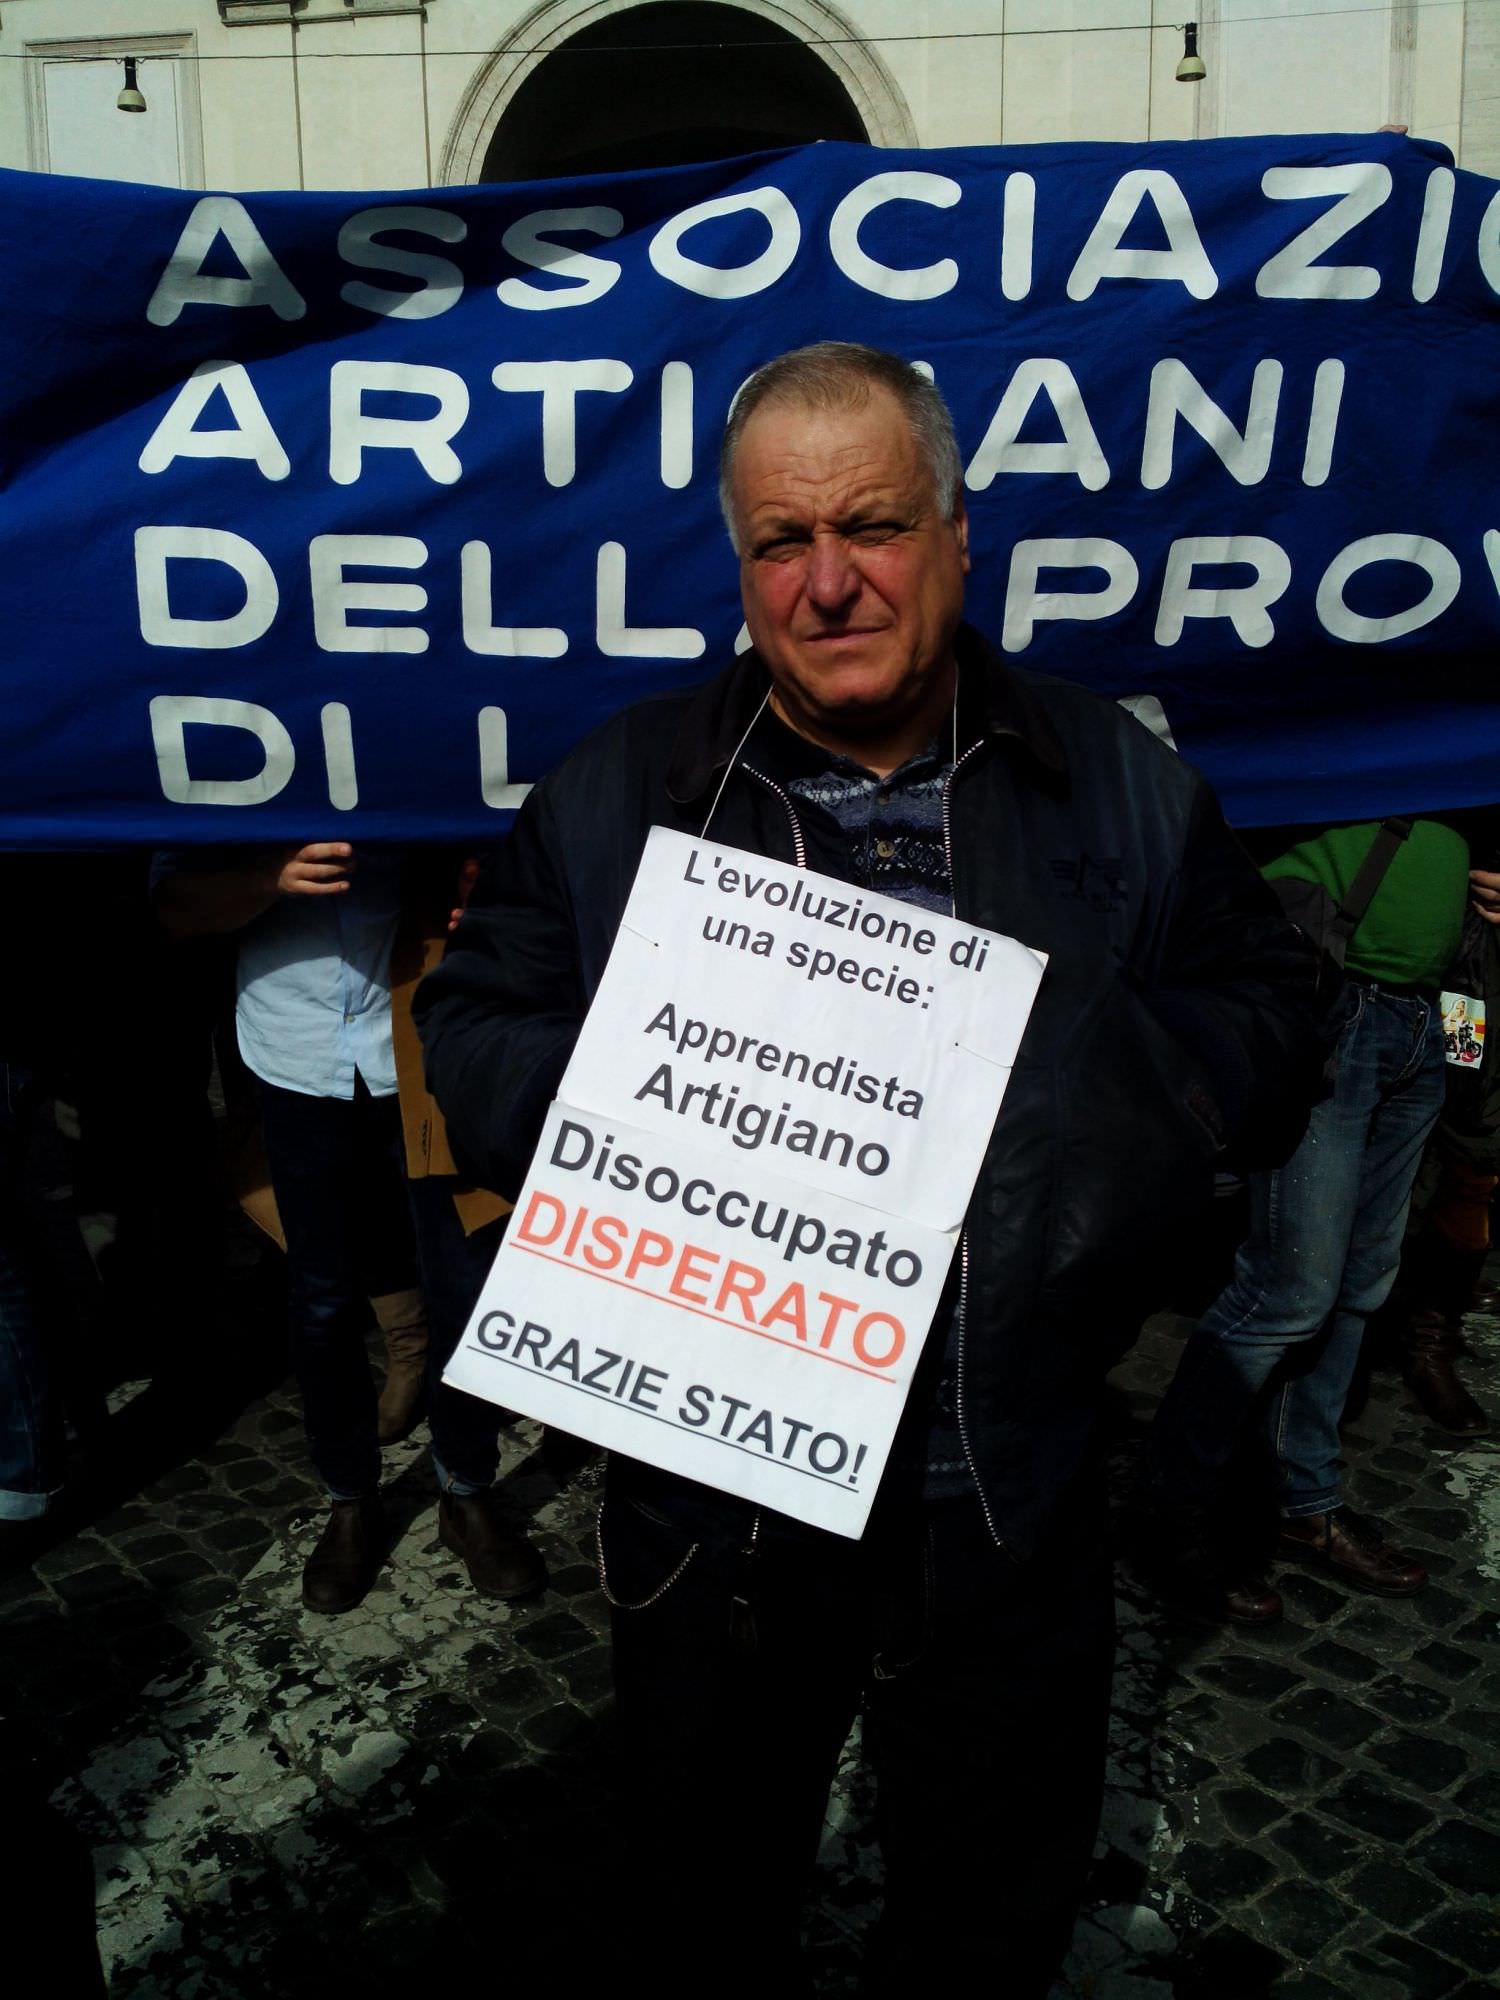 “Apprendista artigiano disoccupato disperato, Grazie Stato”. Il viareggino Giuliano Bandoni protesta a Roma